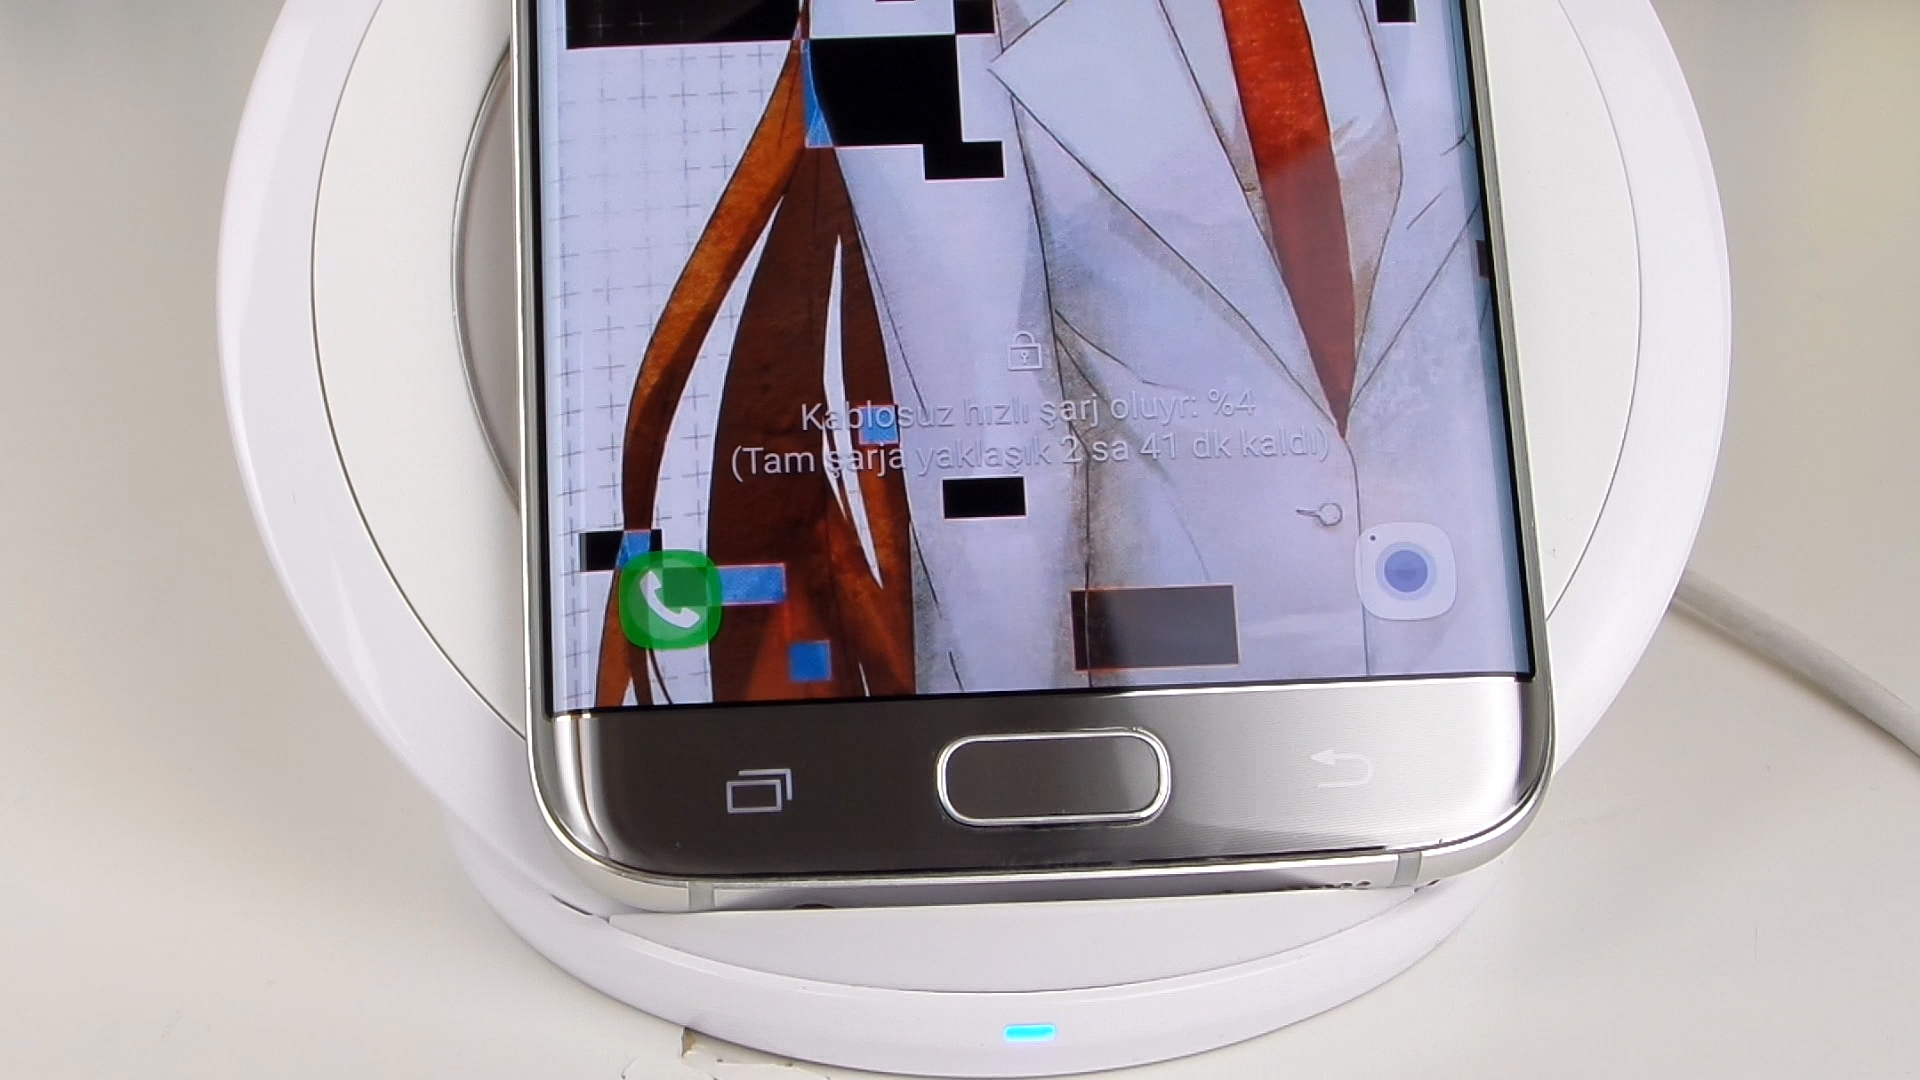 Samsung Kablosuz Hızlı Şarj standı incelemesi 'Hızlı, pratik ve bataryaya zararsız'